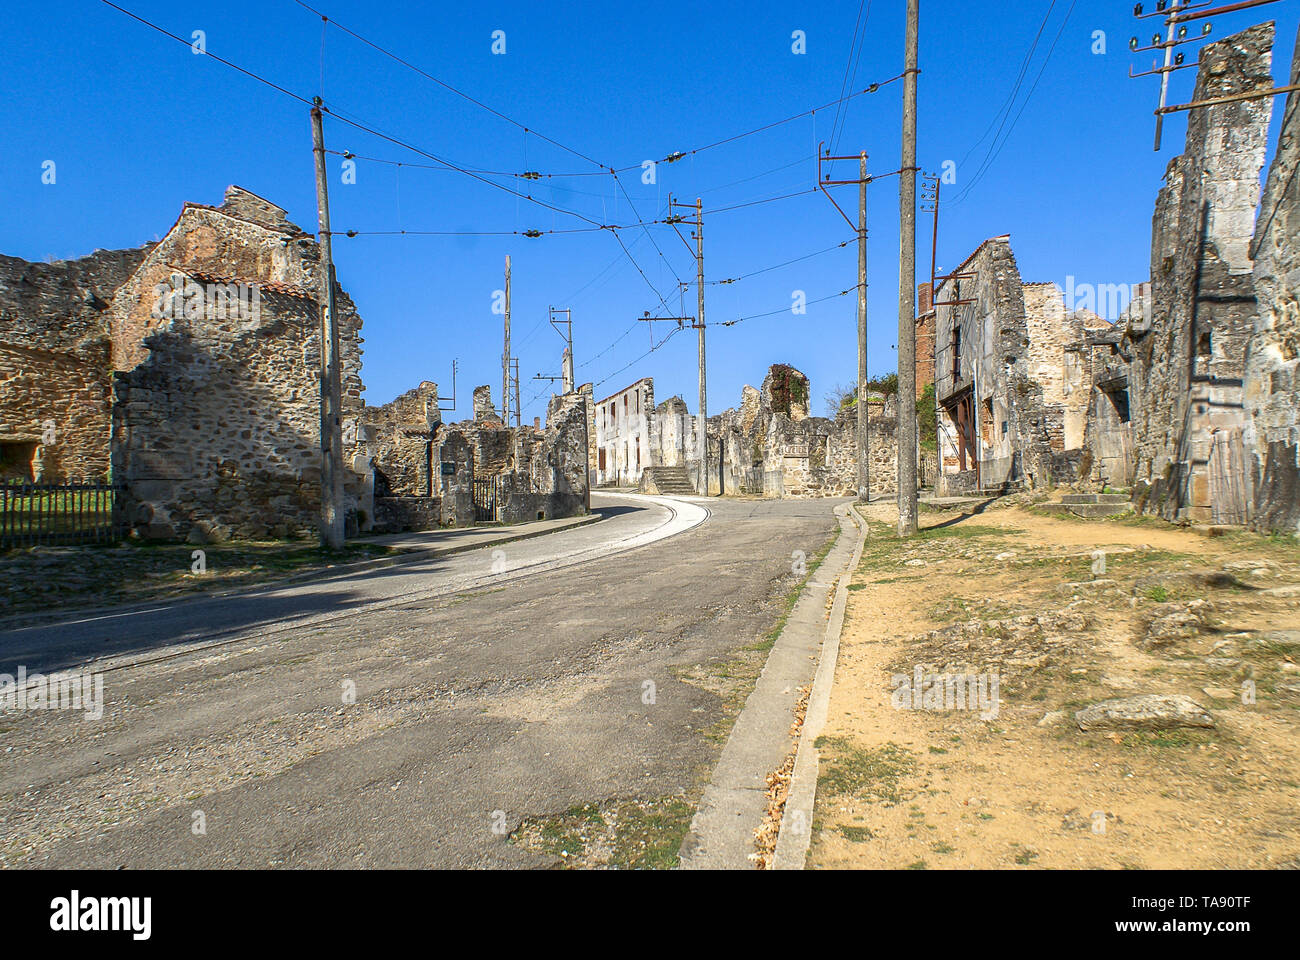 Le village d'Oradour-sur-Glane a été totalement détruit par une société allemande Waffen-SS pendant la Seconde Guerre mondiale. Banque D'Images